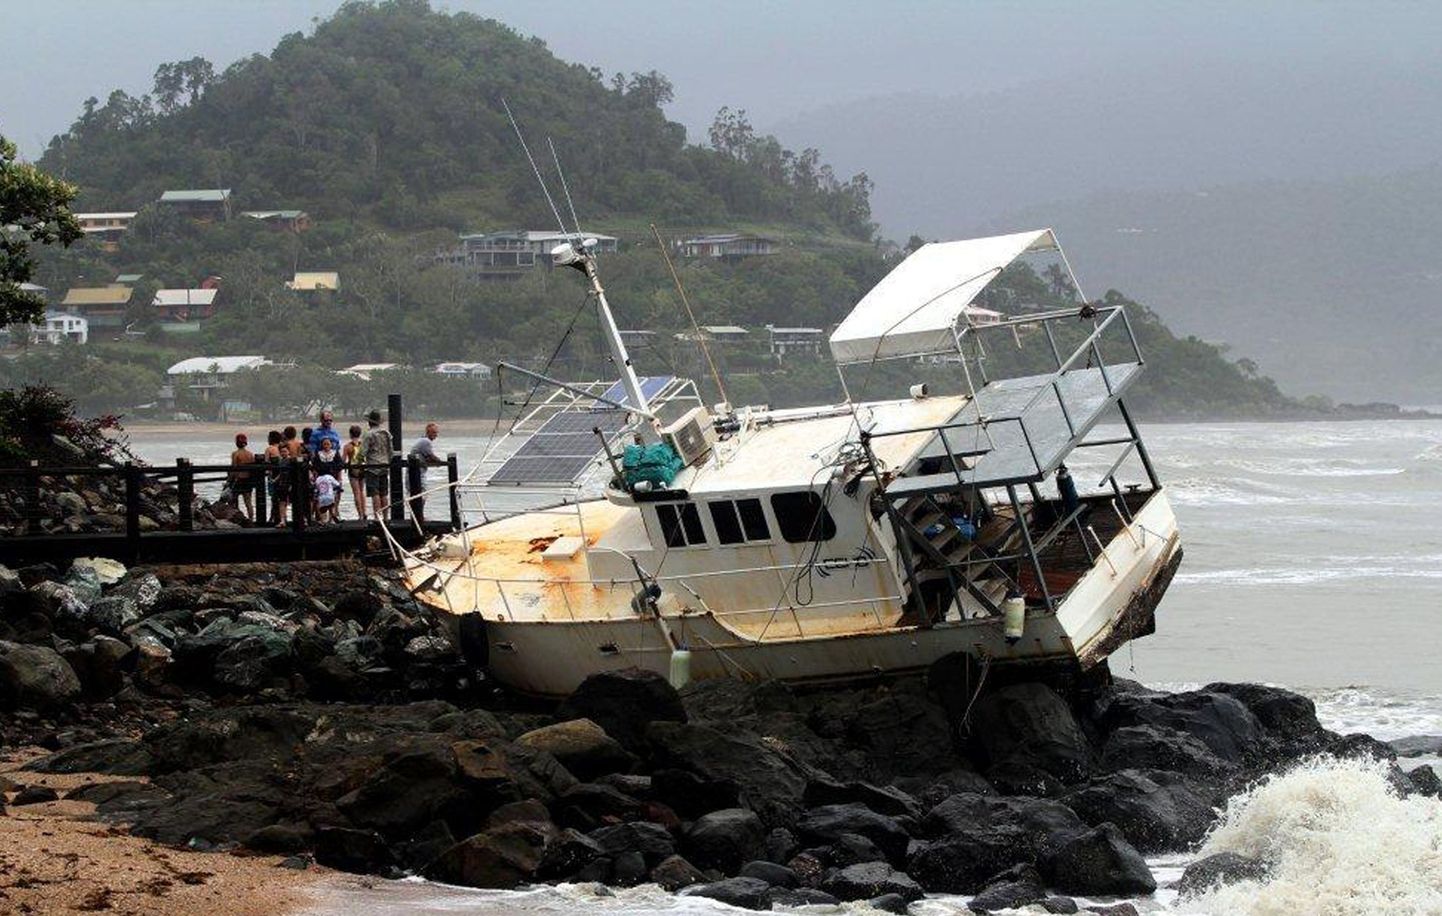 Inimesed uurivad paati, mis troopilise tsükloni Oswaldi tegutsemise tulemusel lendas kividele Airlie rannas, mis asub 120 km Townsville'st (Queenslandi osariik) kagus.